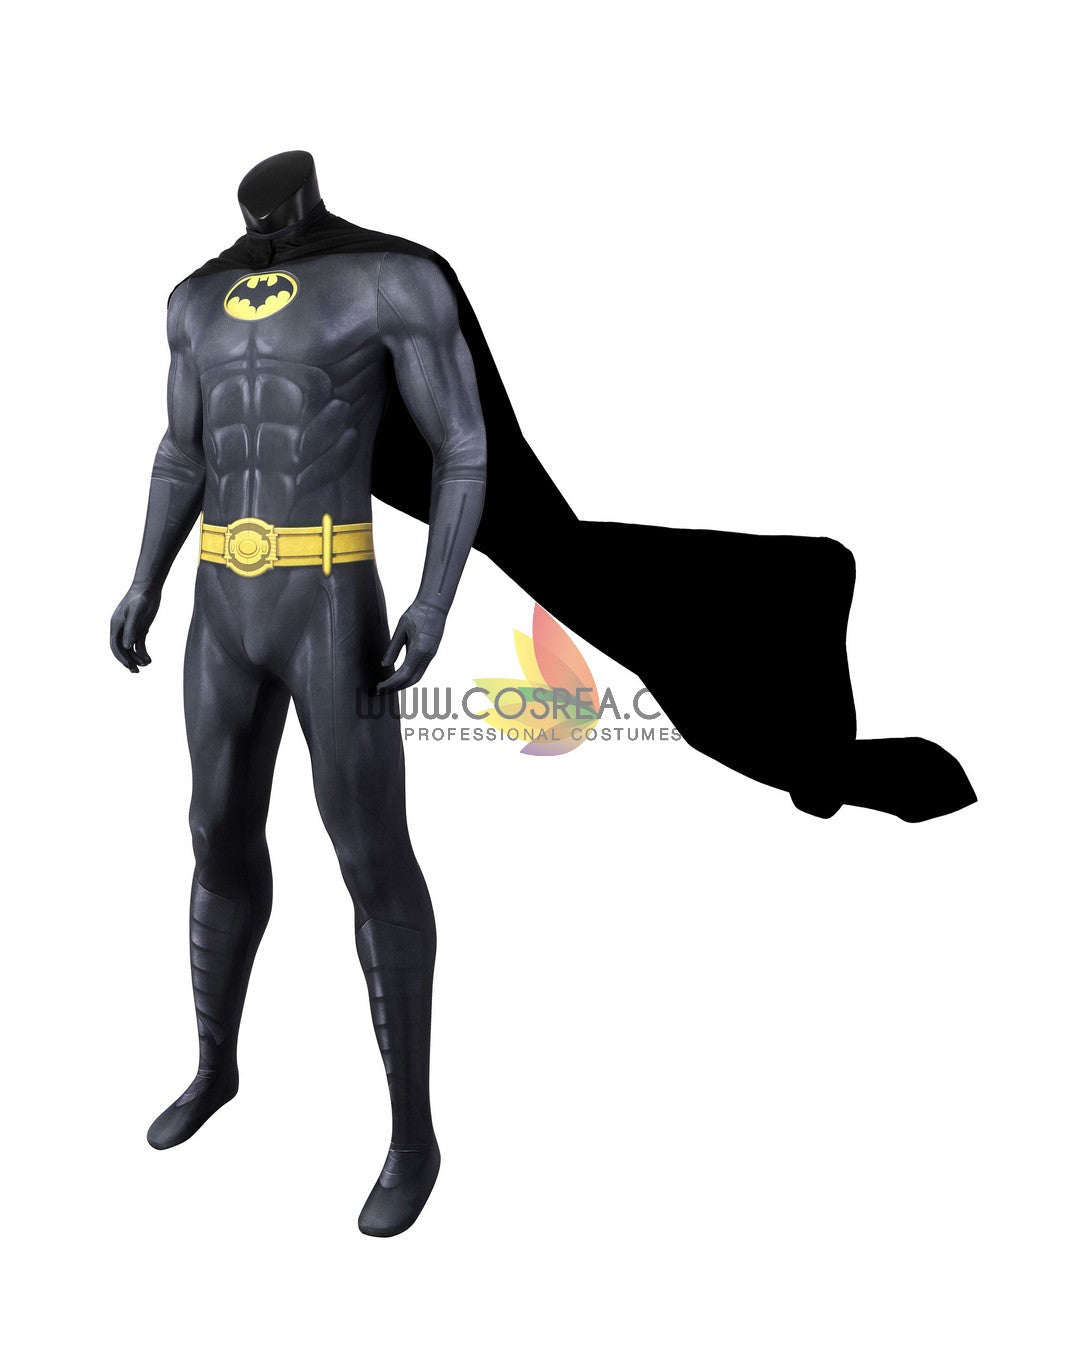 Batman 1989 Movie Version Digital Printed Cosplay Costume